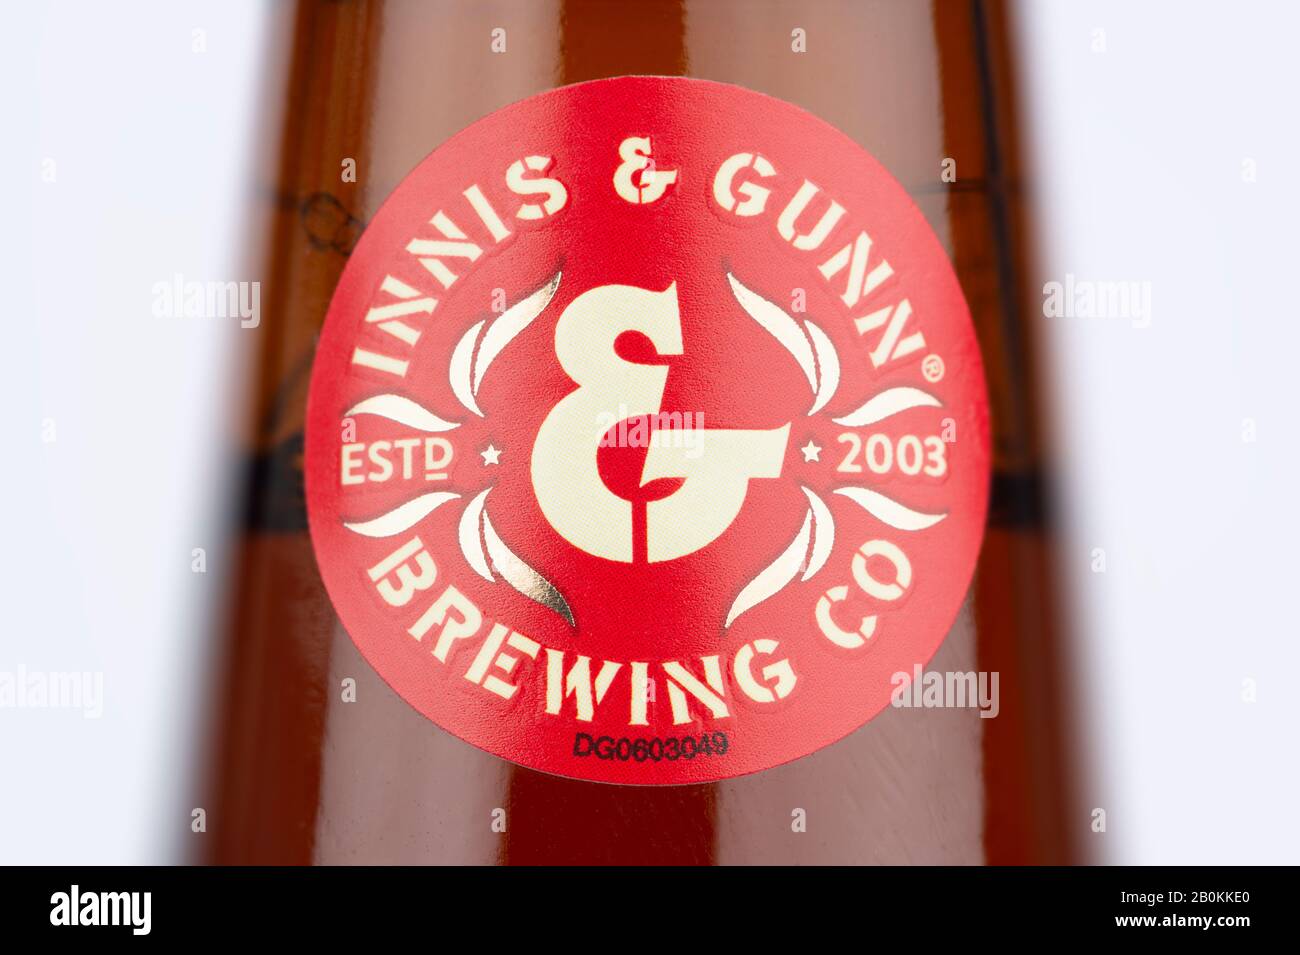 Un primo piano del logo del marchio come visto su una bottiglia di Innis & Gunn bourbon barile scotch ale girato su uno sfondo bianco. Foto Stock